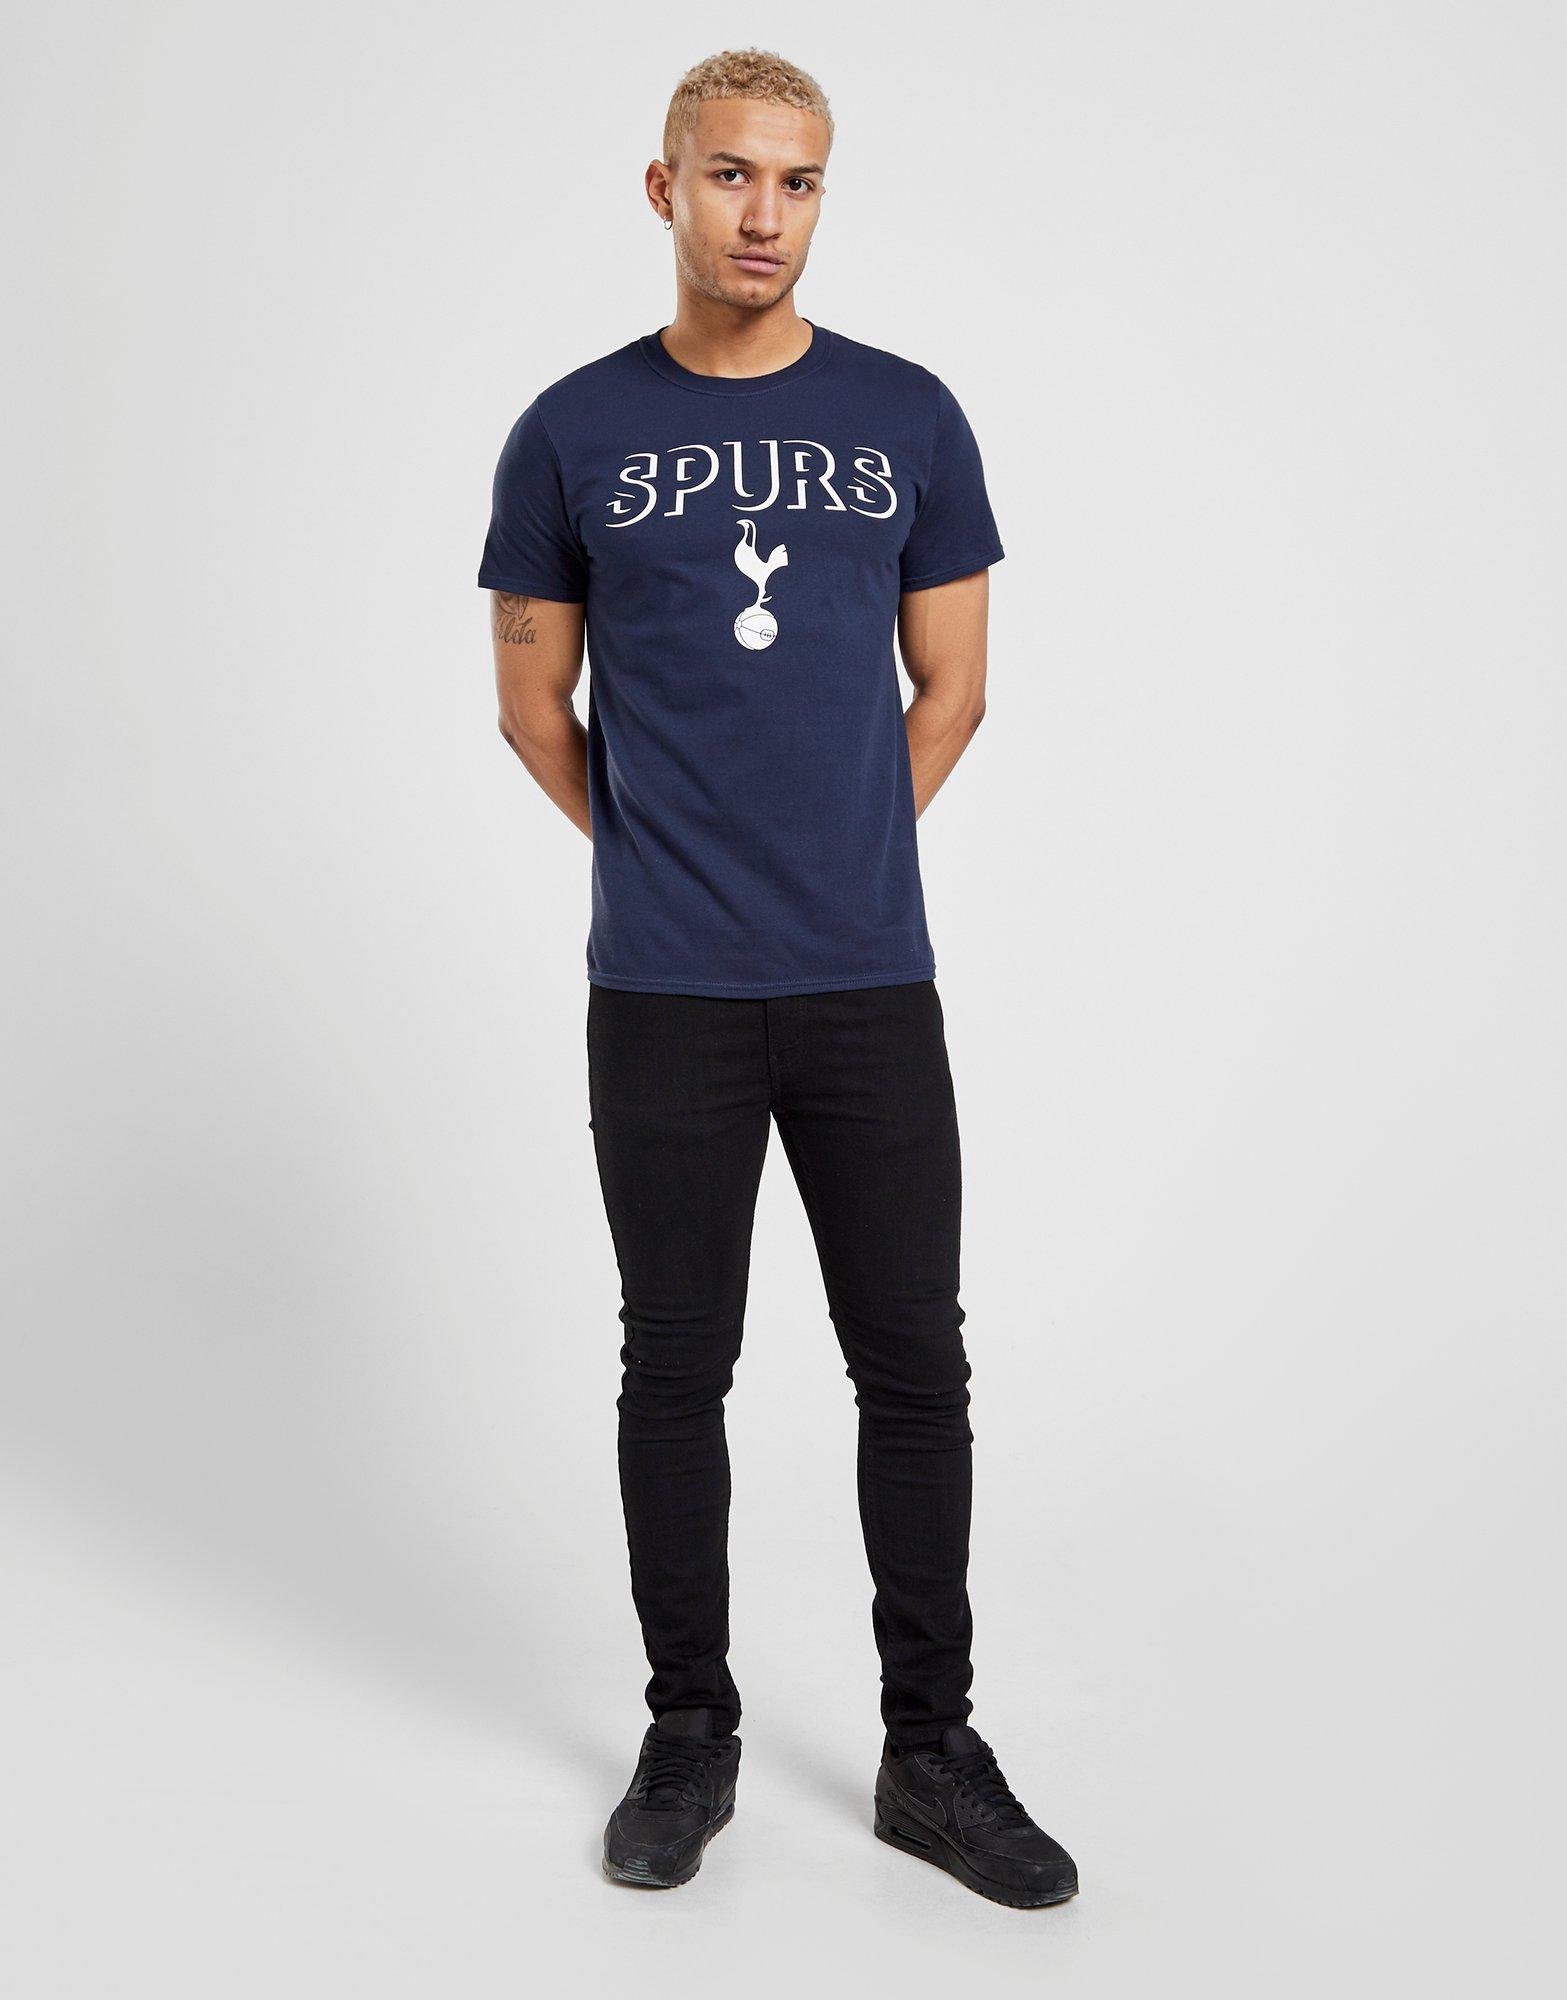 official spurs shirt